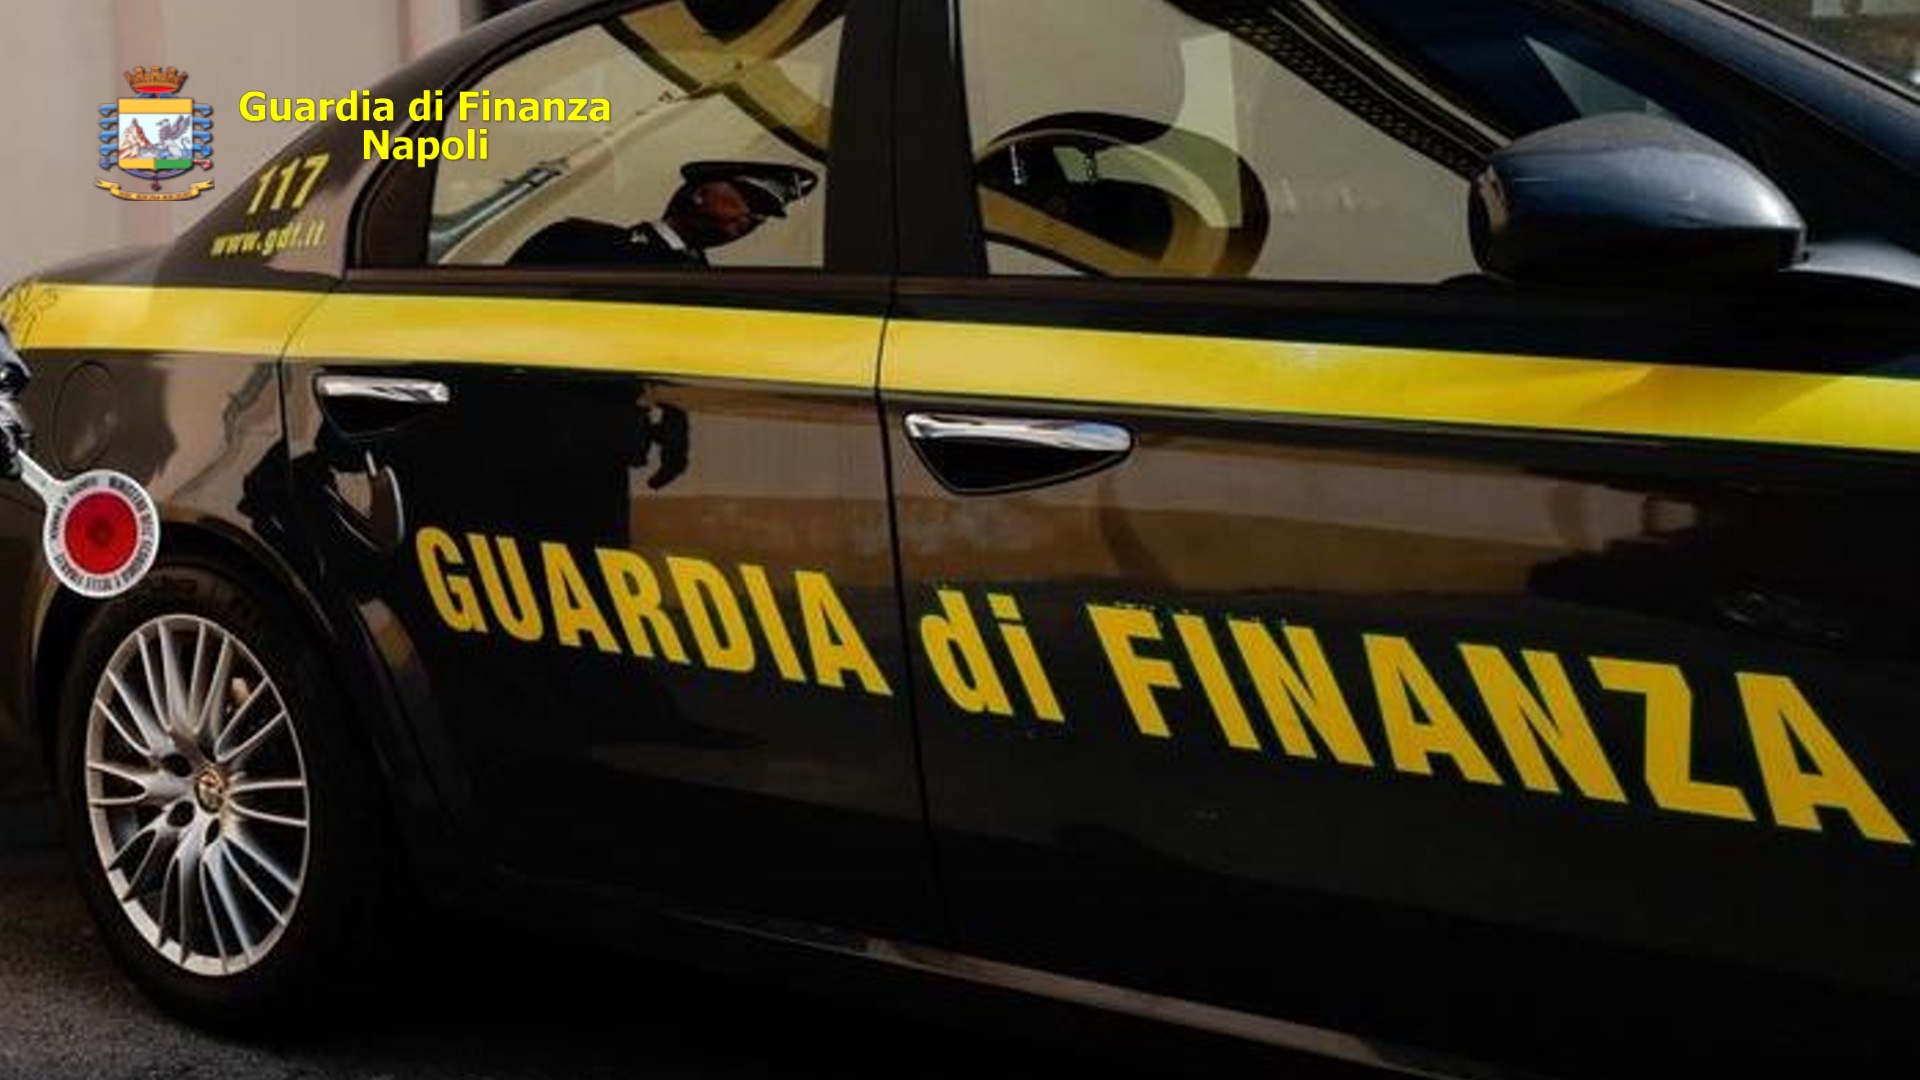 Carnevale: sequestrati oltre 1 milione di prodotti illegali tra Napoli e la provincia